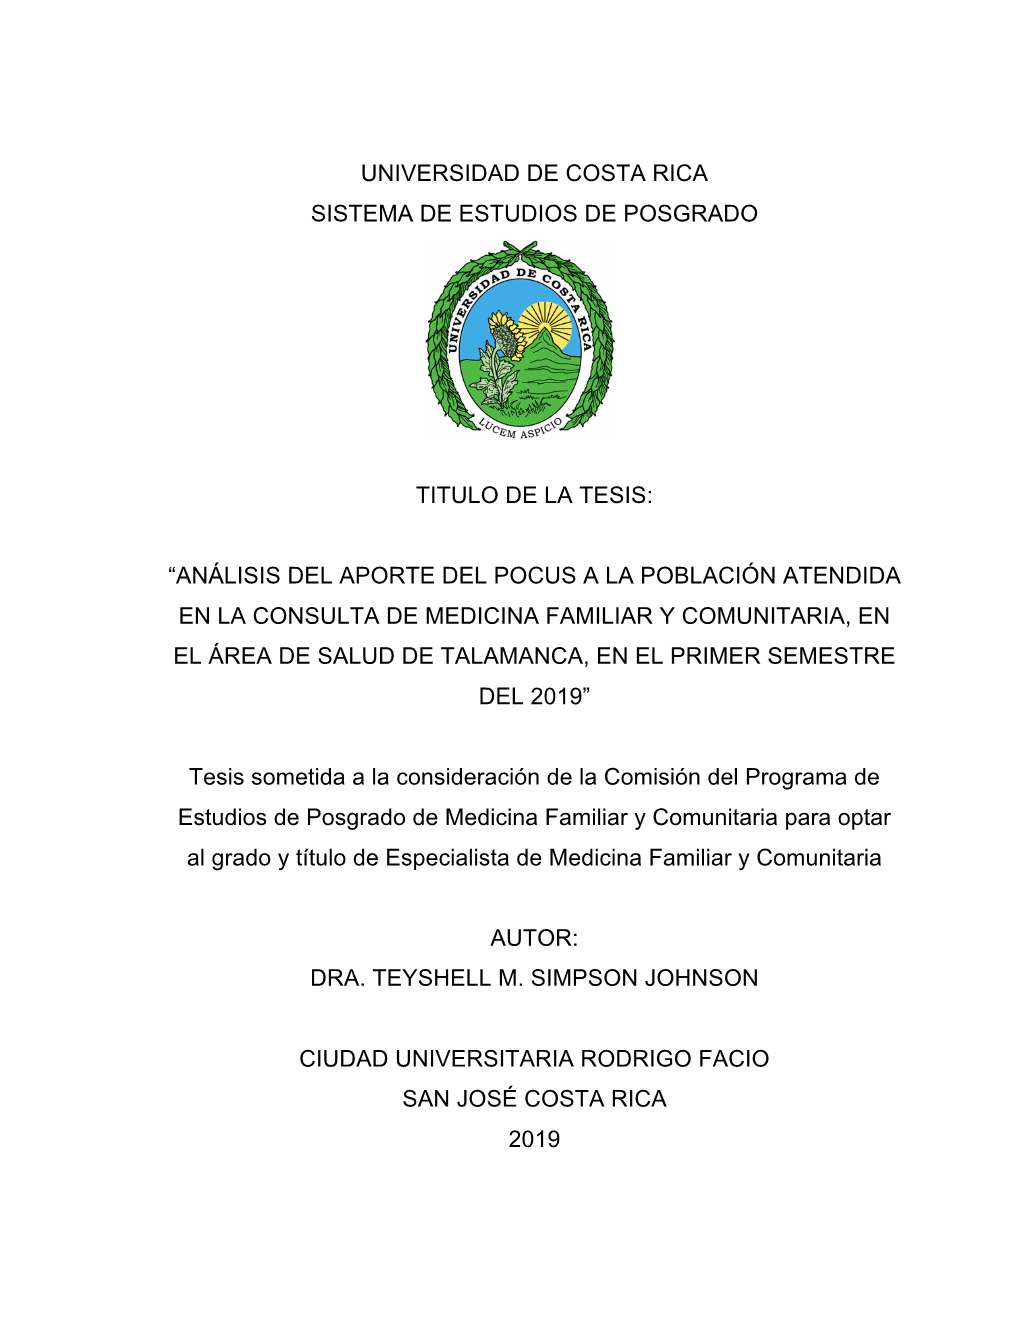 Universidad De Costa Rica Sistema De Estudios De Posgrado Titulo De La Tesis: “Análisis Del Aporte Del Pocus a La Población